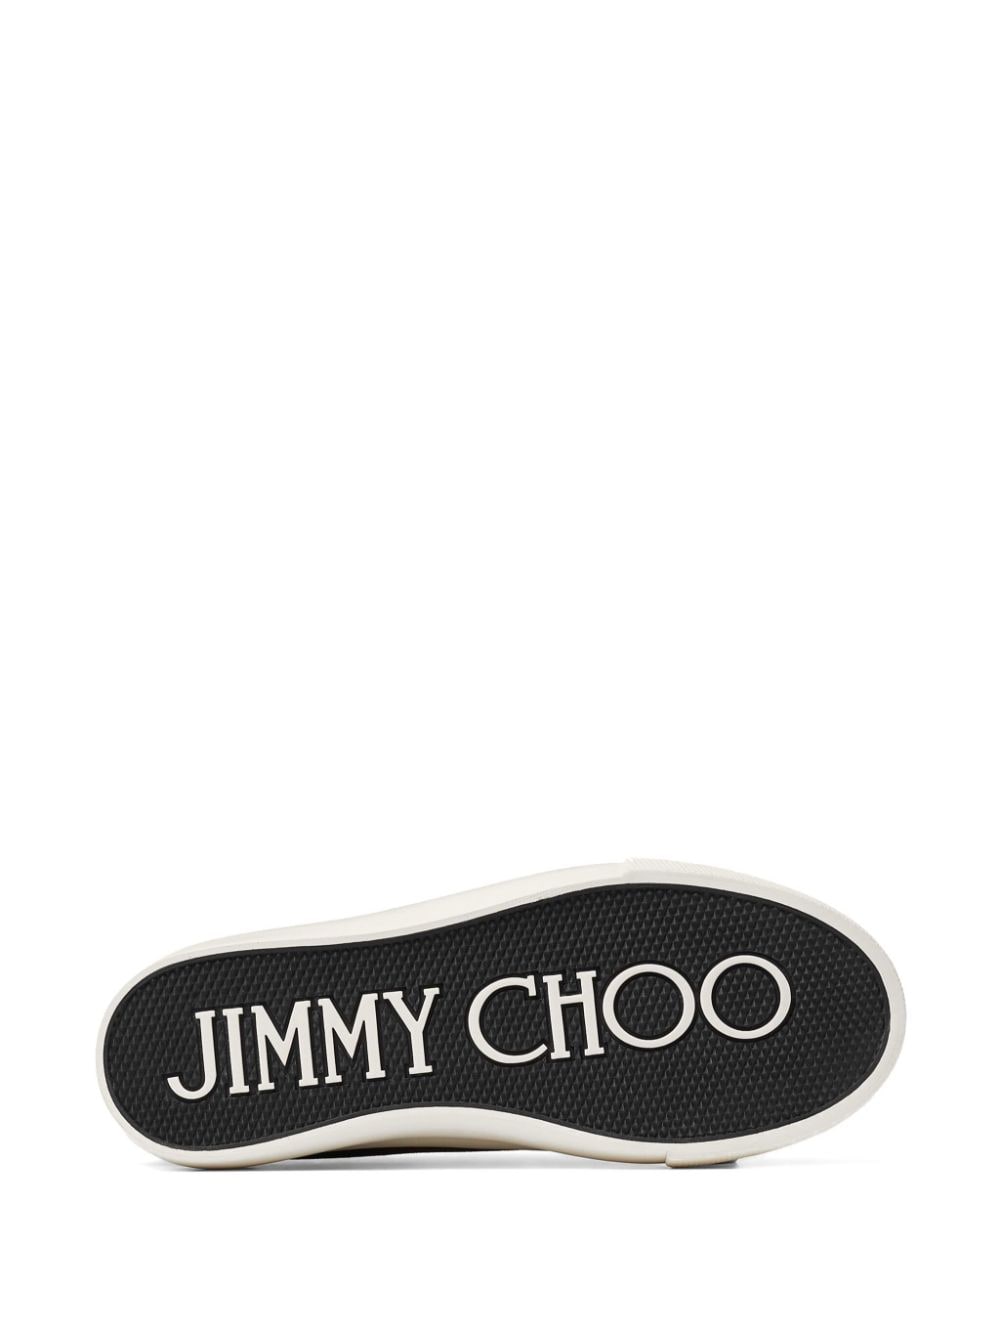 Jimmy Choo Sneakers Black